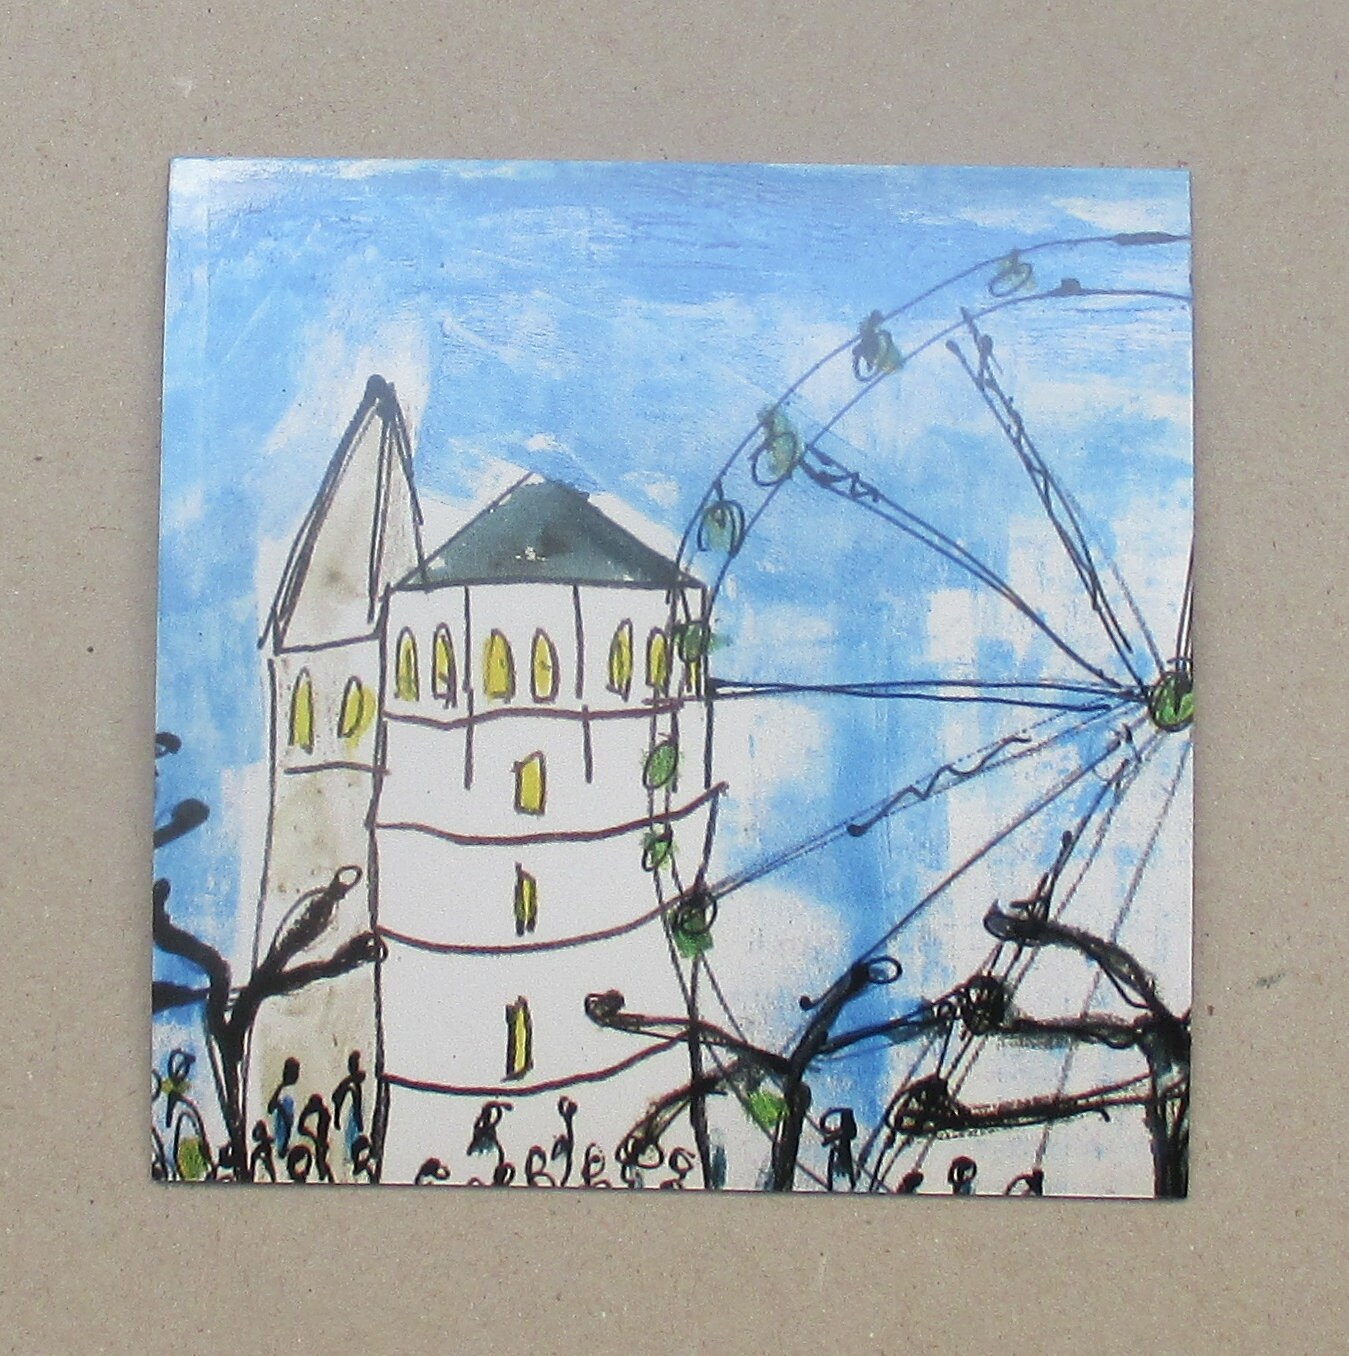 6 Düsseldorf -Szenen Burgplatz Turm je 10x10 cm auf Magneten gedruckt - signiert/x/10 numeriert